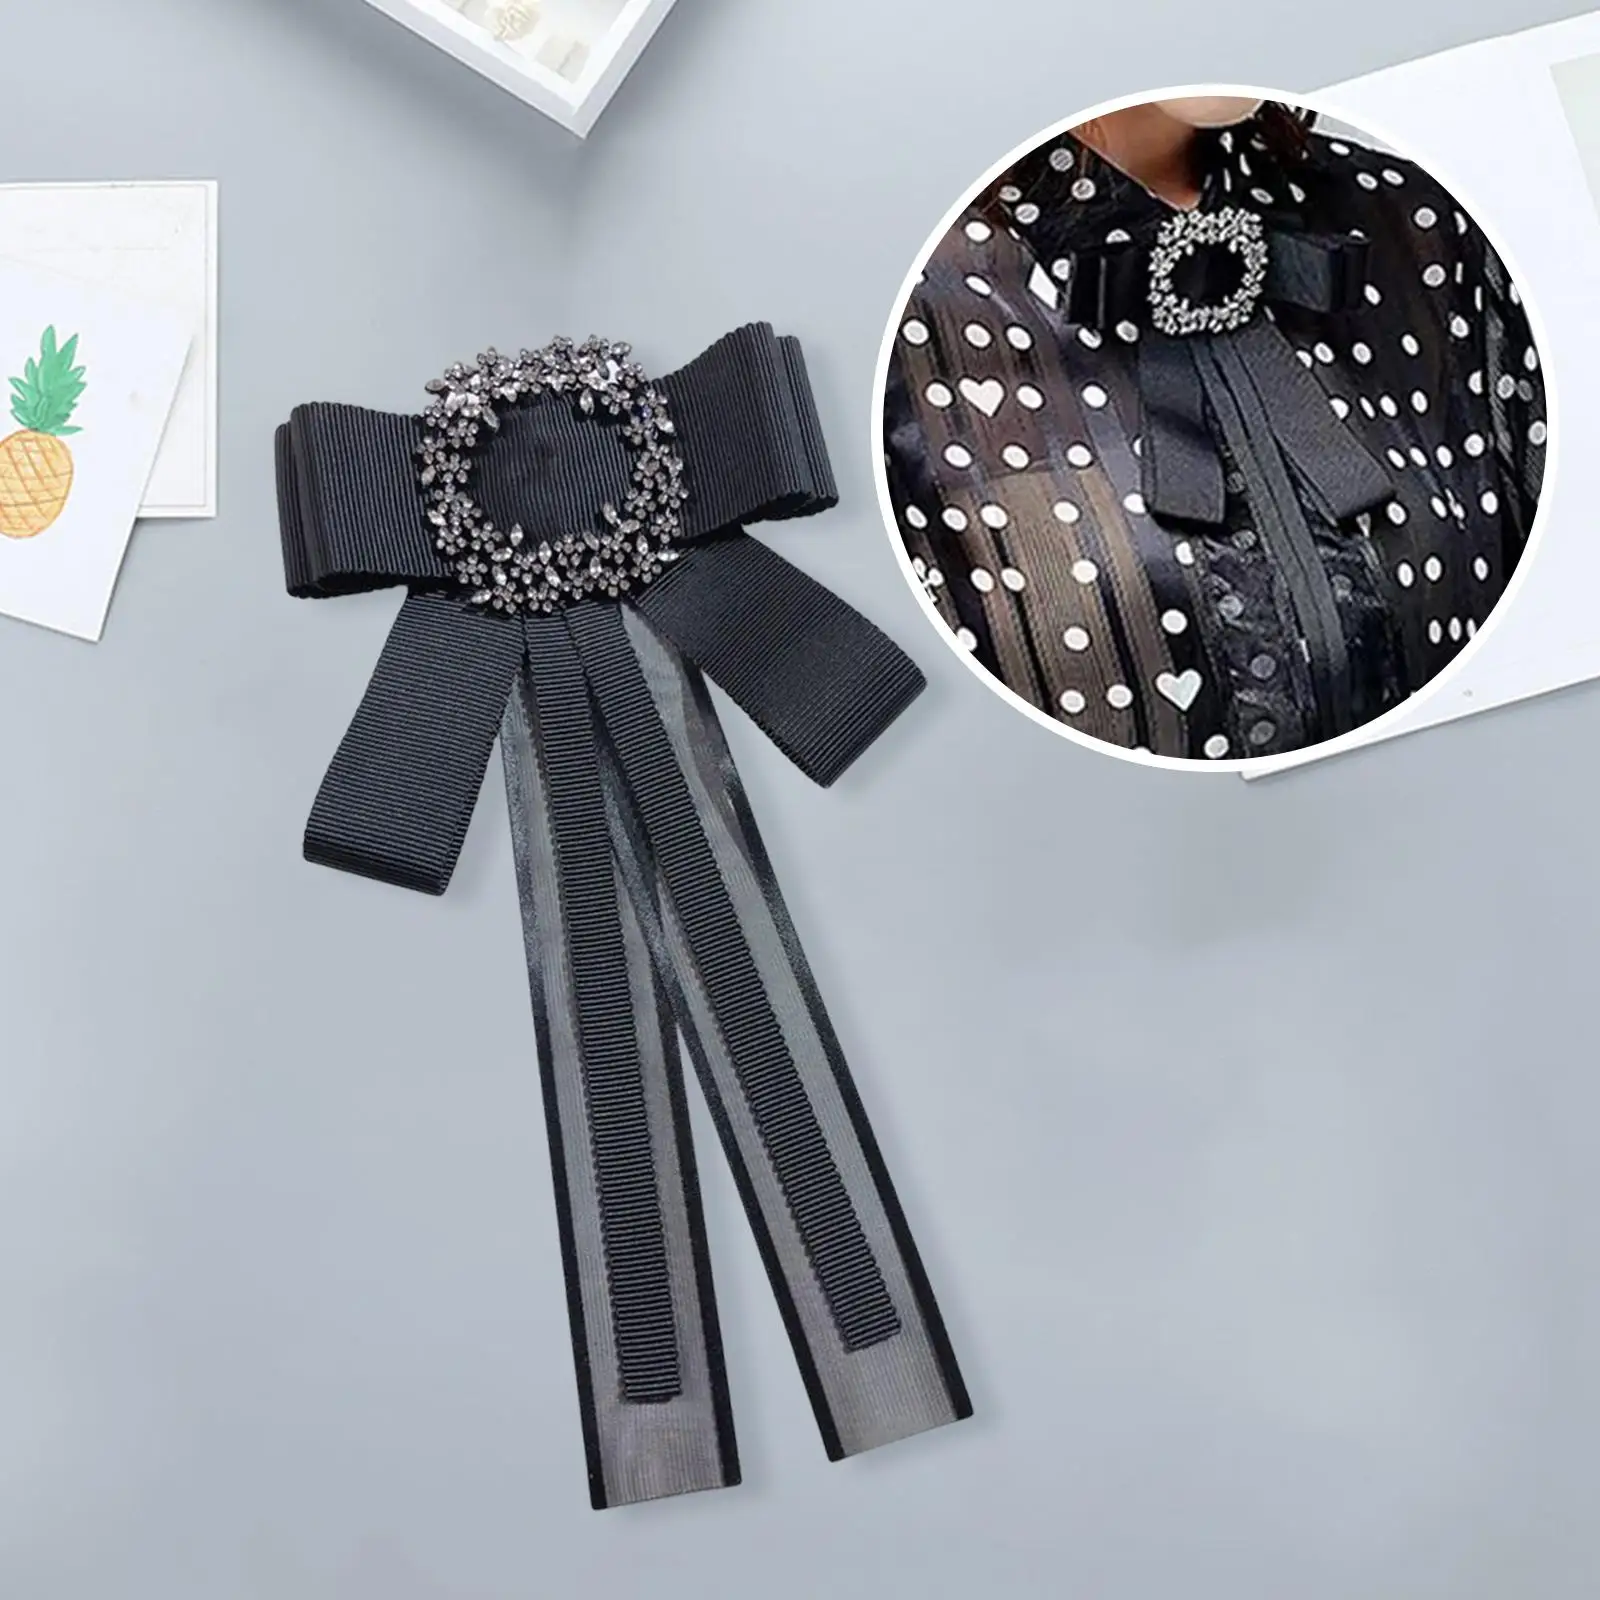 Rhinestone Bowtie Collar Jewelry Clothing Accessories Necktie for Banquet